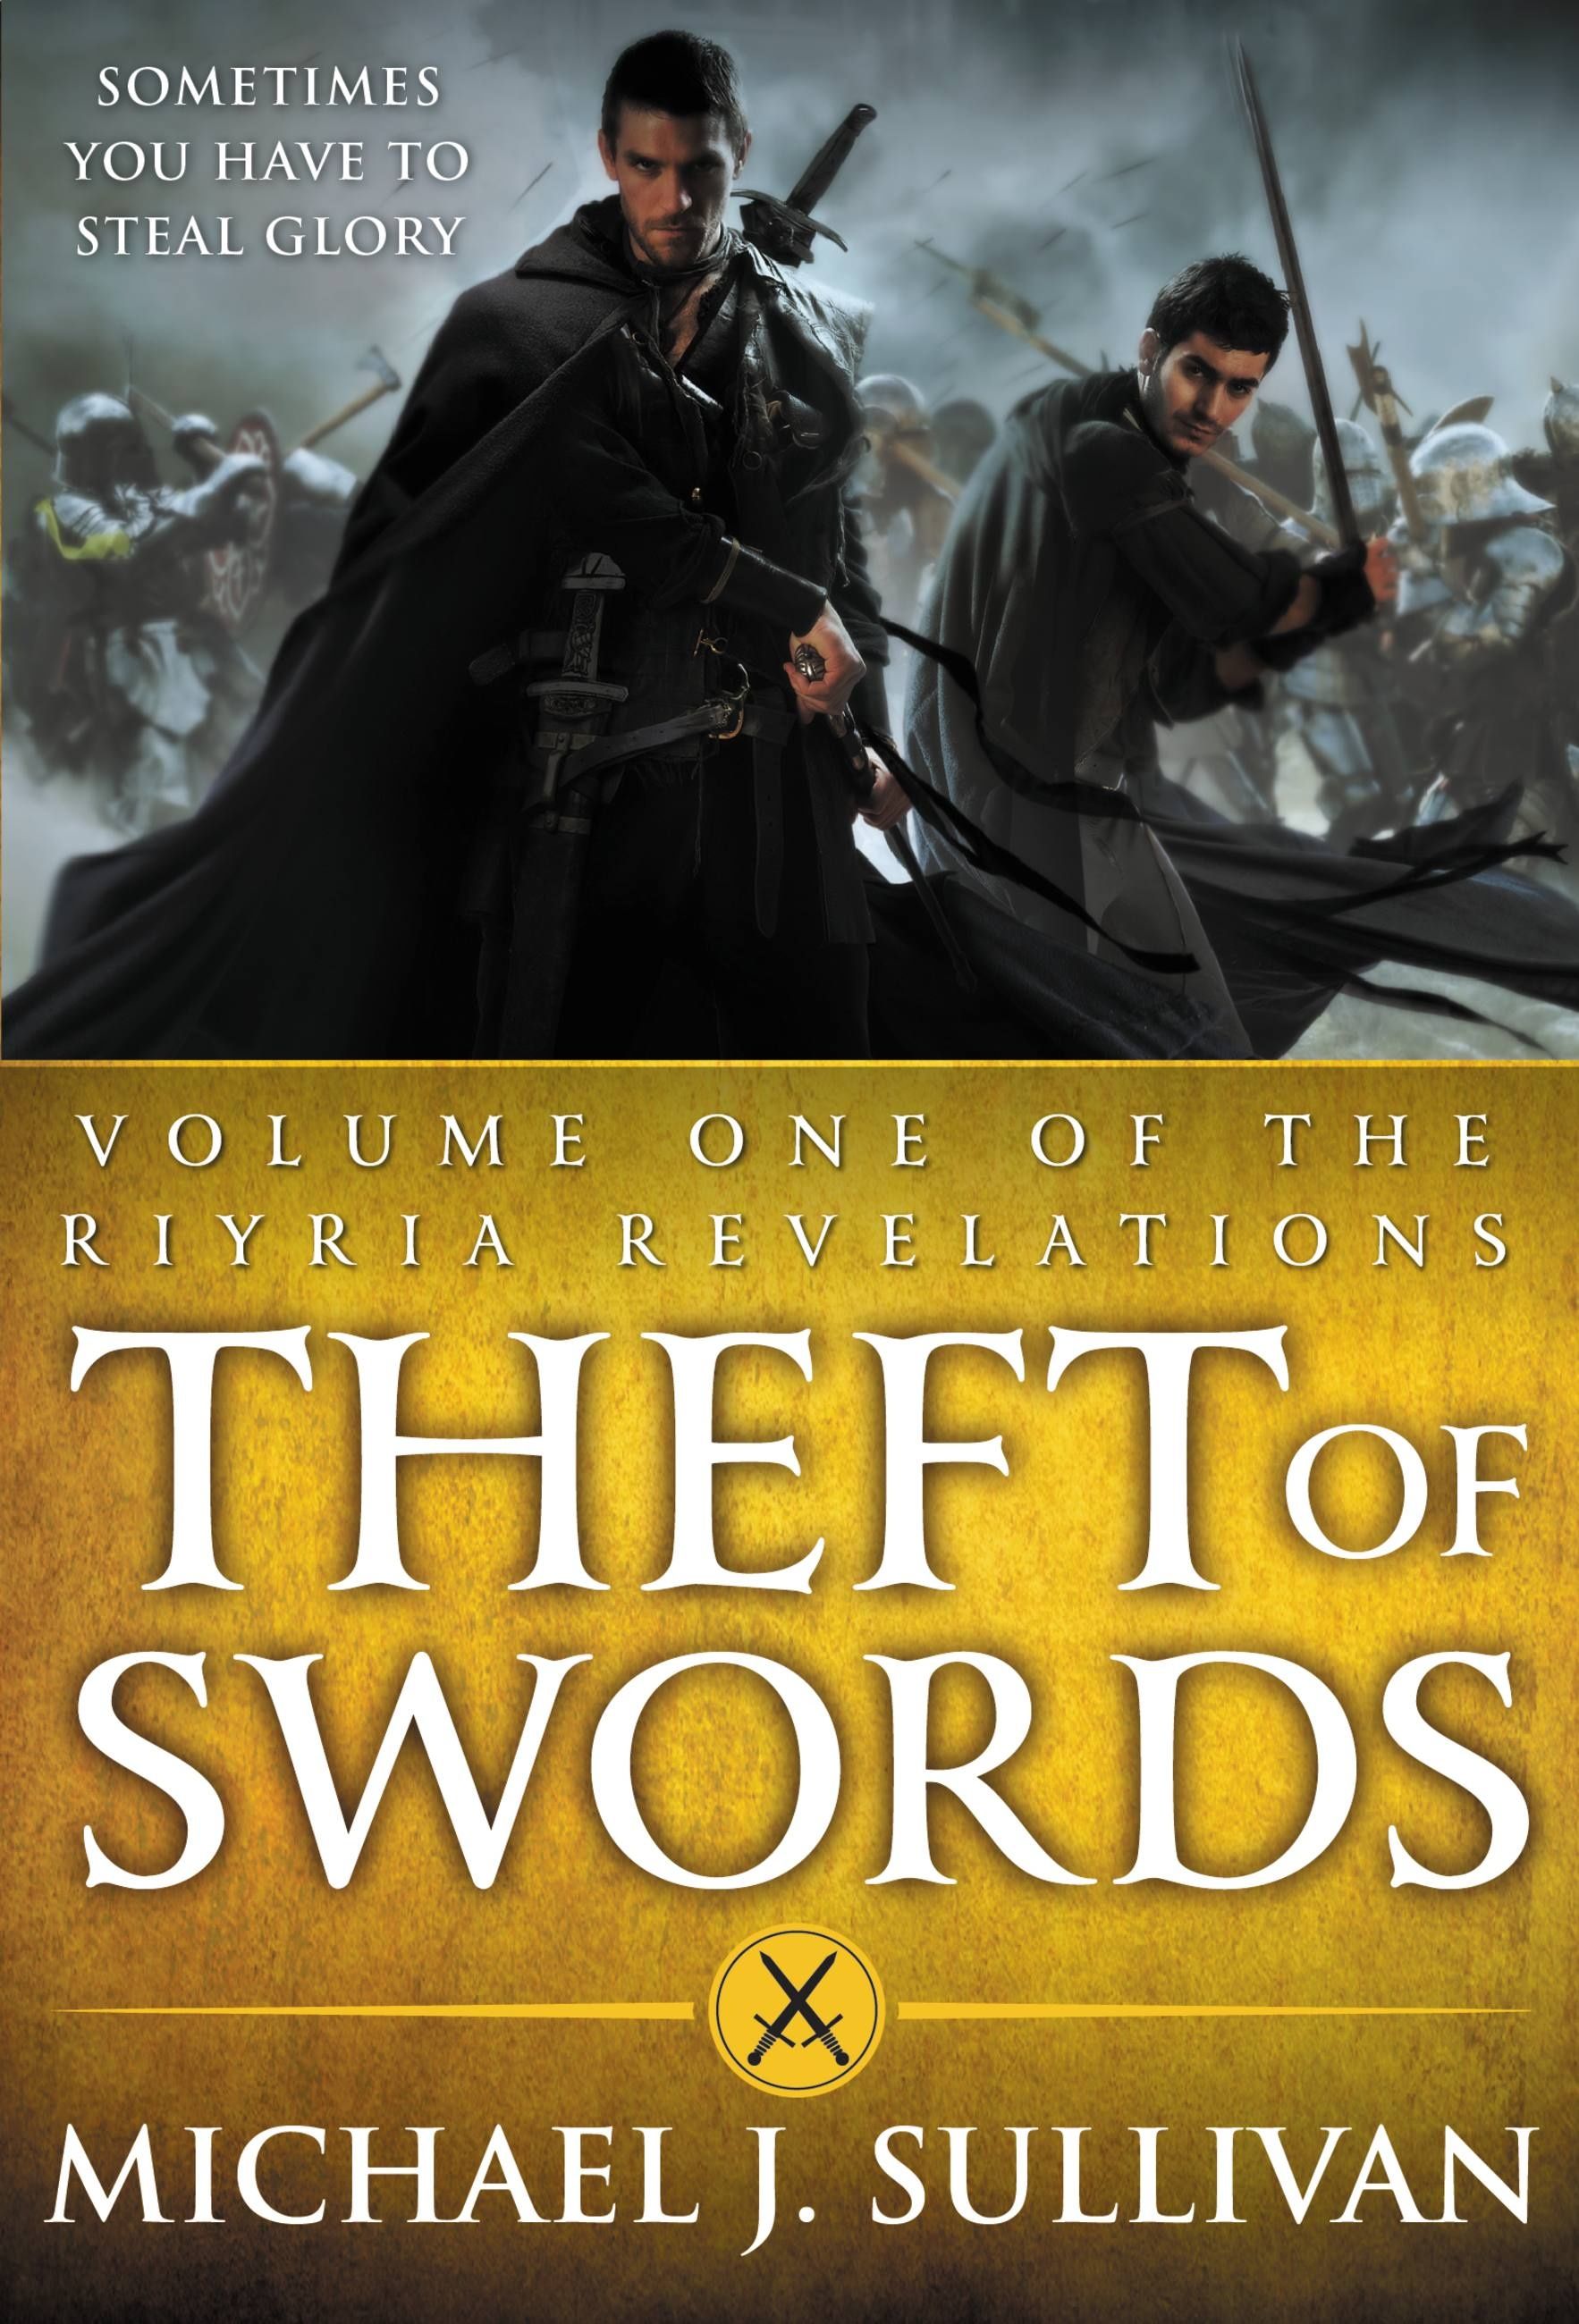 Michael J. Sullivan: Theft of swords (Paperback, 2011, Orbit)